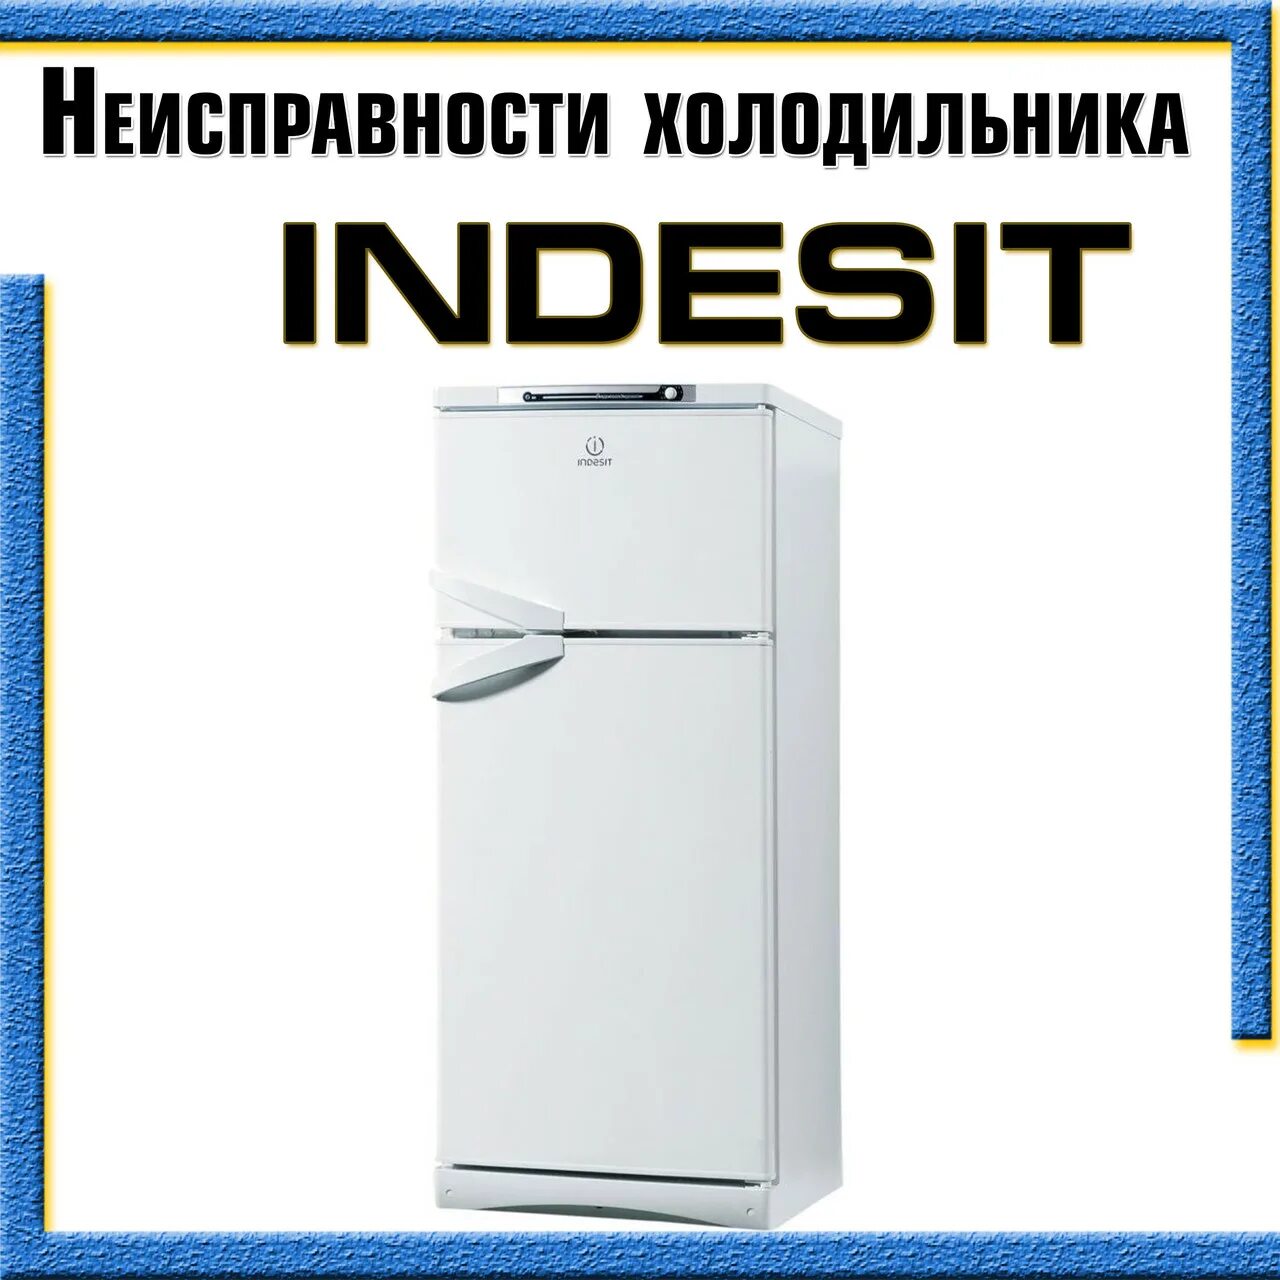 Индезит холодильник производитель. Ремонт холодильника Индезит своими руками. Холодильник индезит гудит